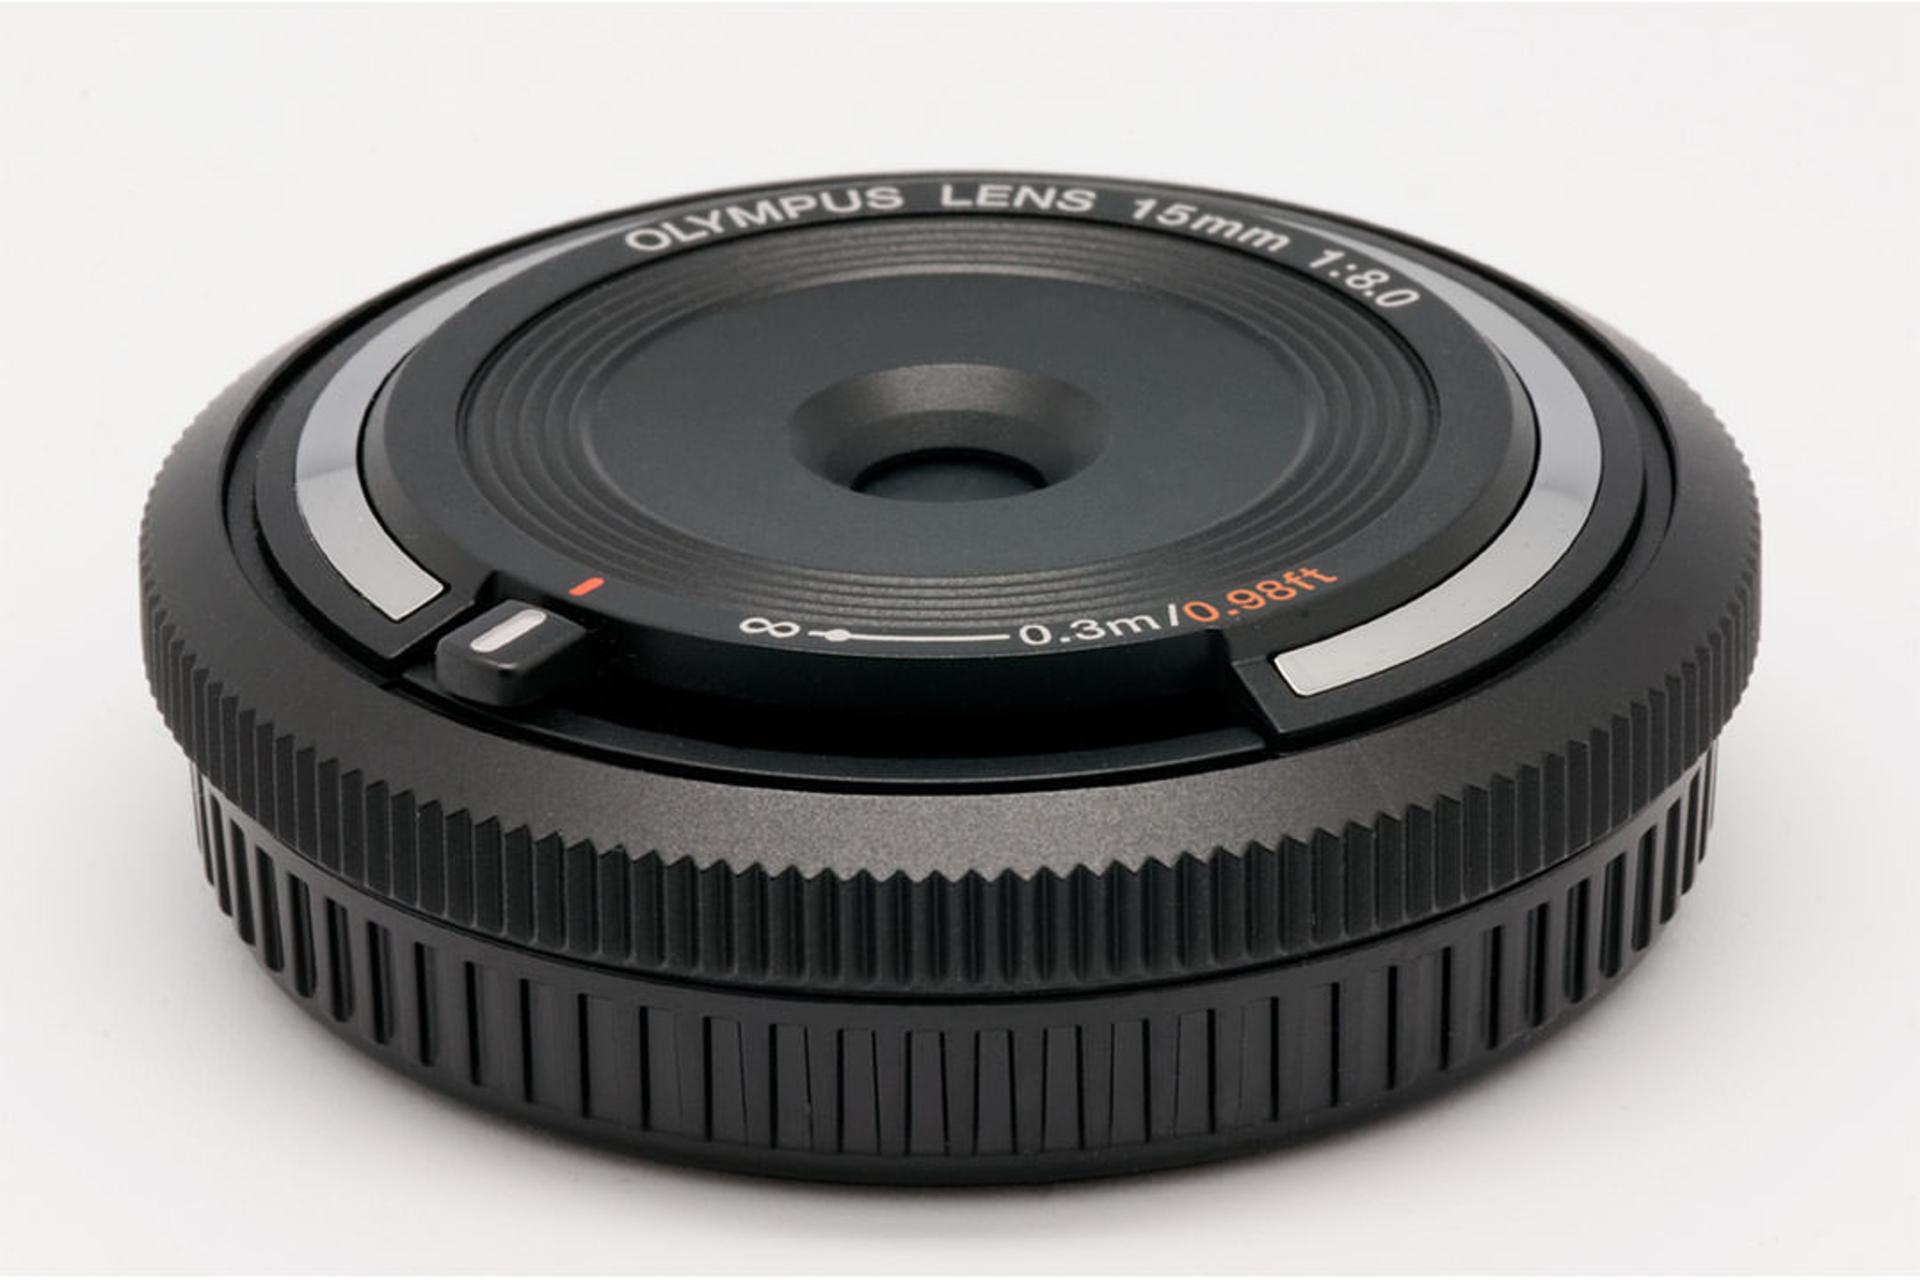 Olympus Body Cap Lens 15mm F8.0